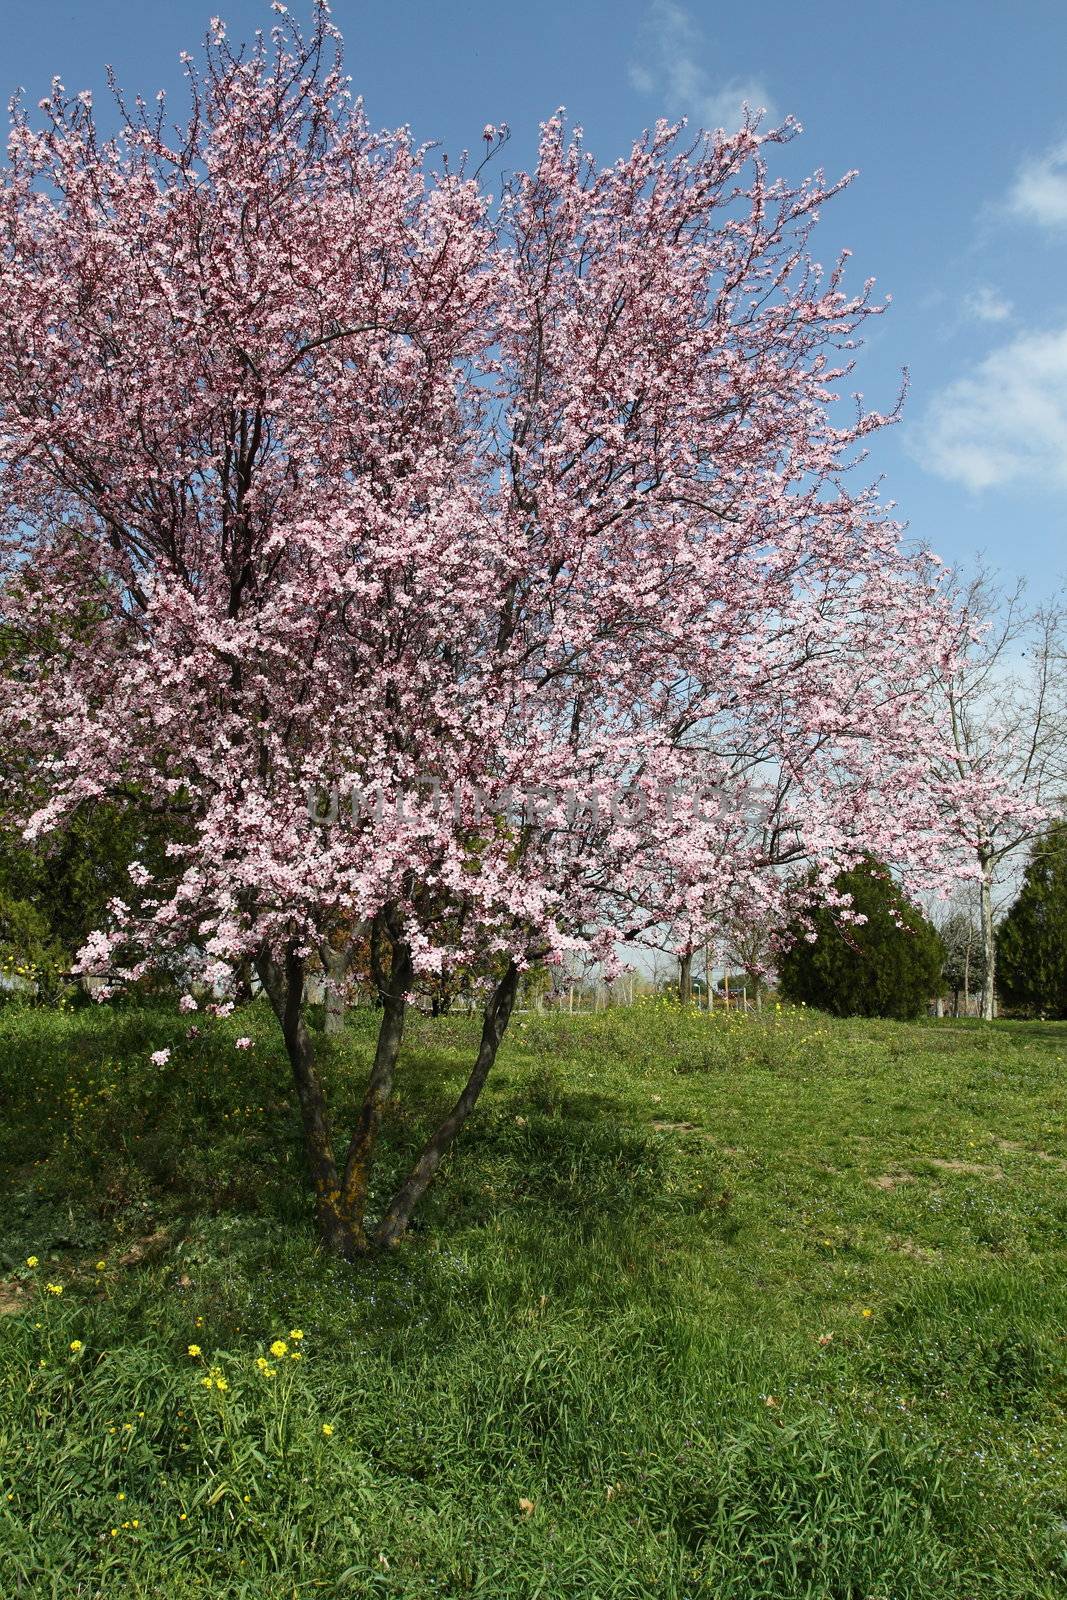 Cherry blossom by mariusz_prusaczyk